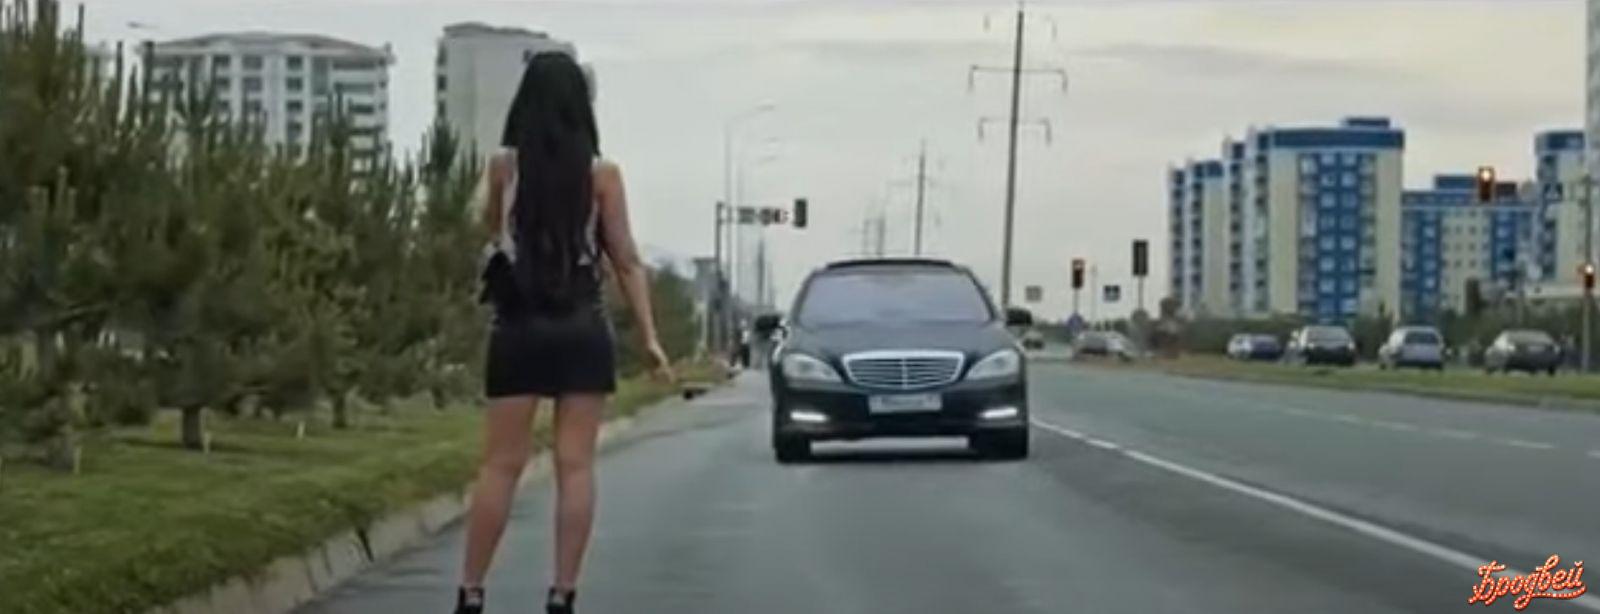 Кадр из социального видеоролика «Проститутка»